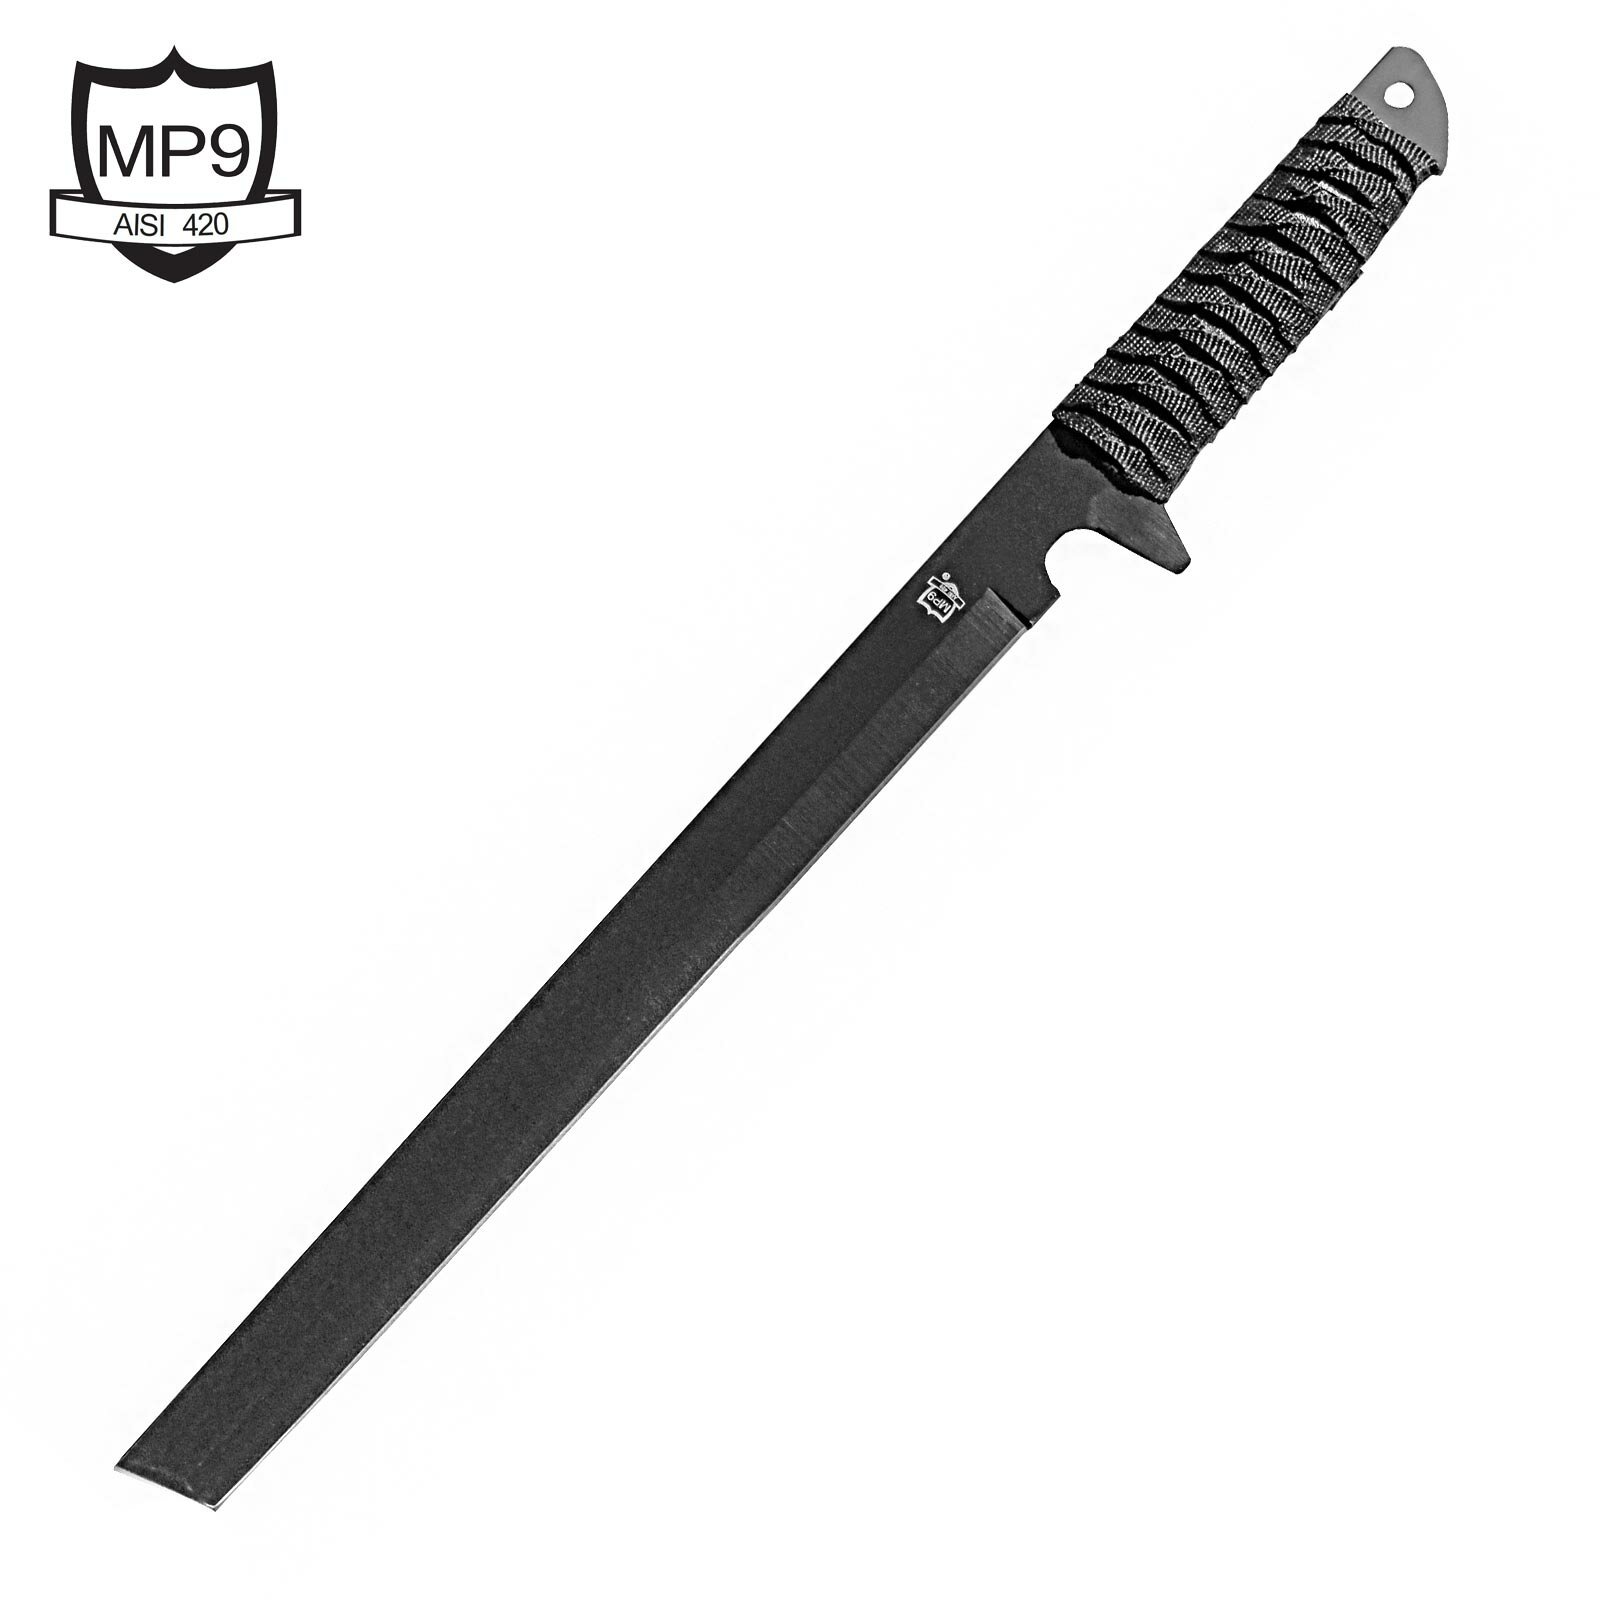 Buchner MP9 Ninjaschwert